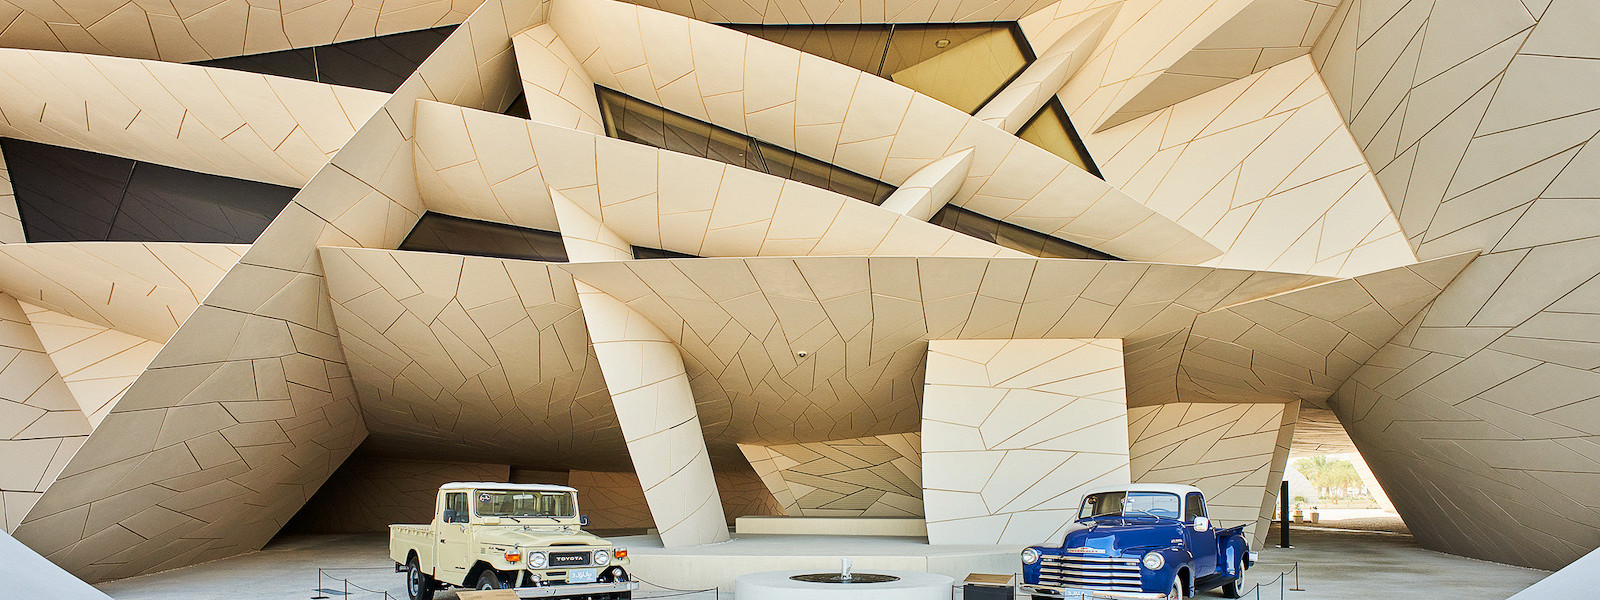 Журнал/От Dior до Corvette: 5 главных выставок Катара, которые нельзя пропустить этой зимой